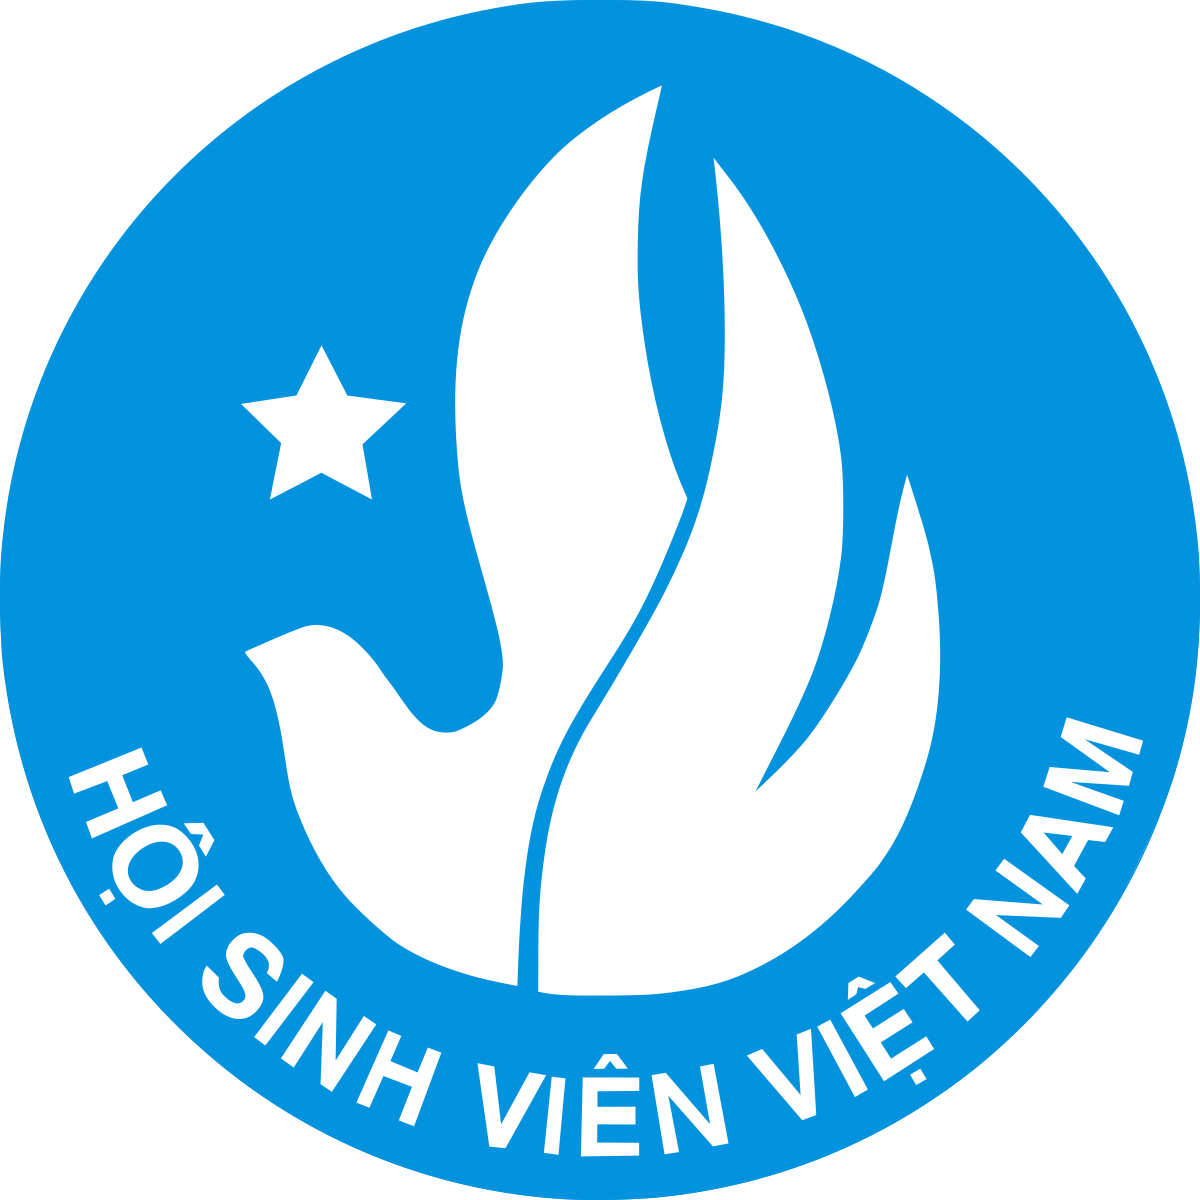 Biểu trưng của hội sinh viên Việt Nam là gì? Ý nghĩa logo hội sinh viên Việt Nam là gì?